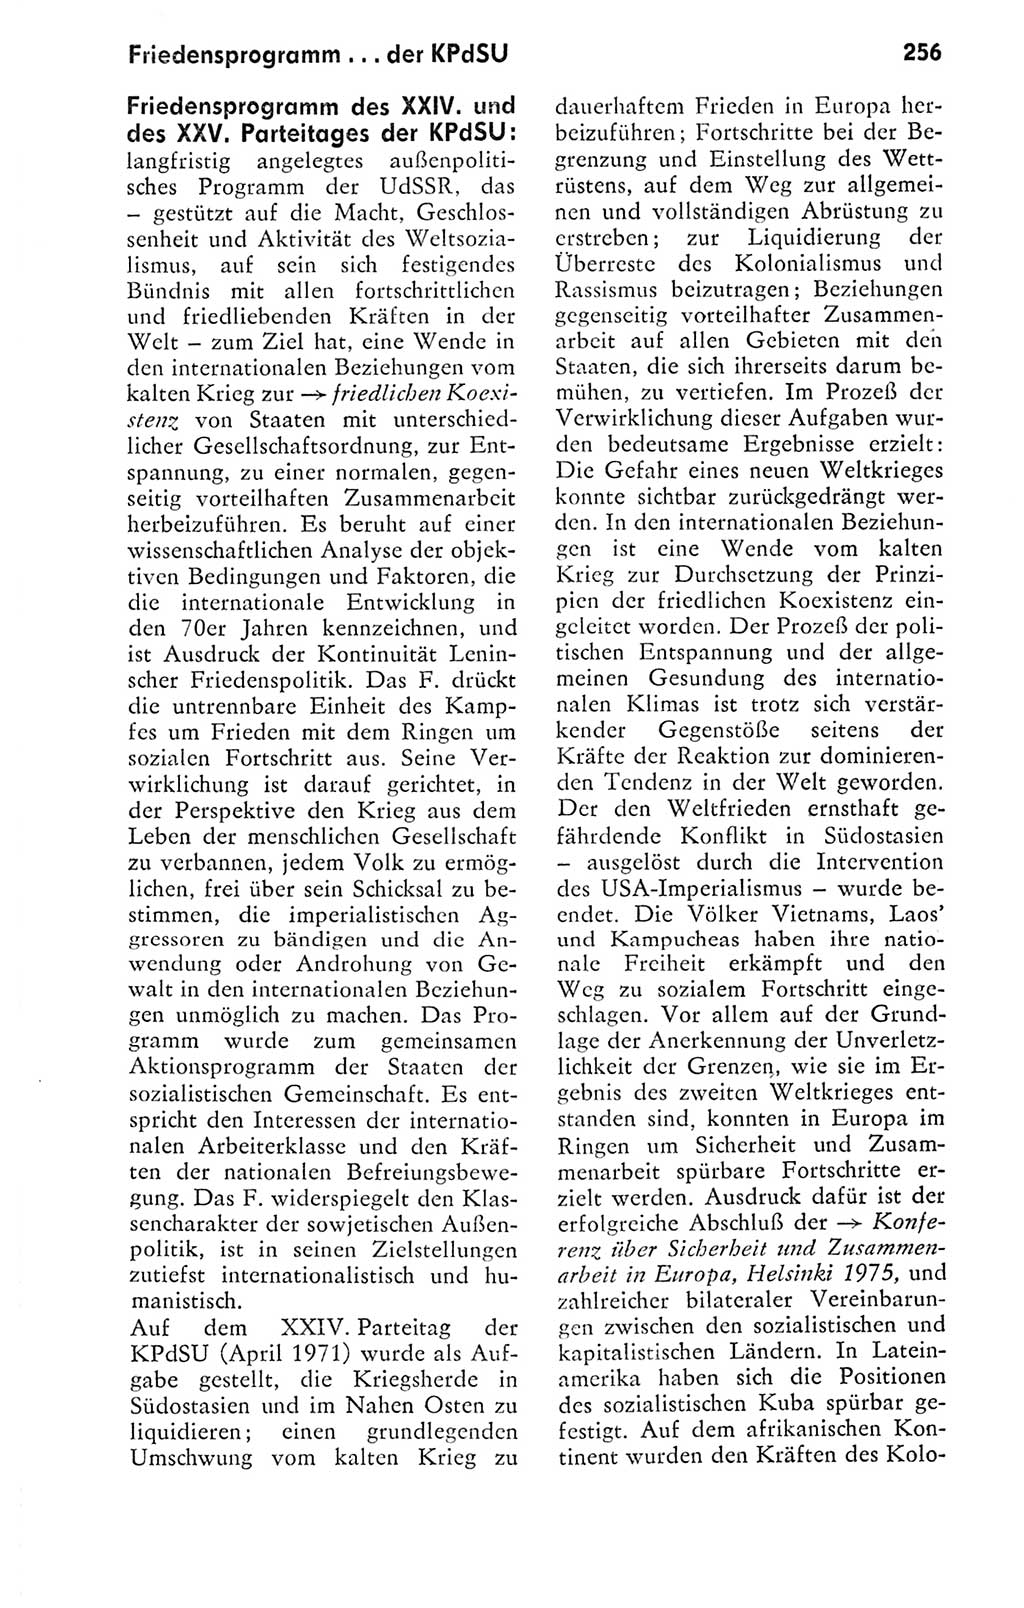 Kleines politisches Wörterbuch [Deutsche Demokratische Republik (DDR)] 1978, Seite 256 (Kl. pol. Wb. DDR 1978, S. 256)